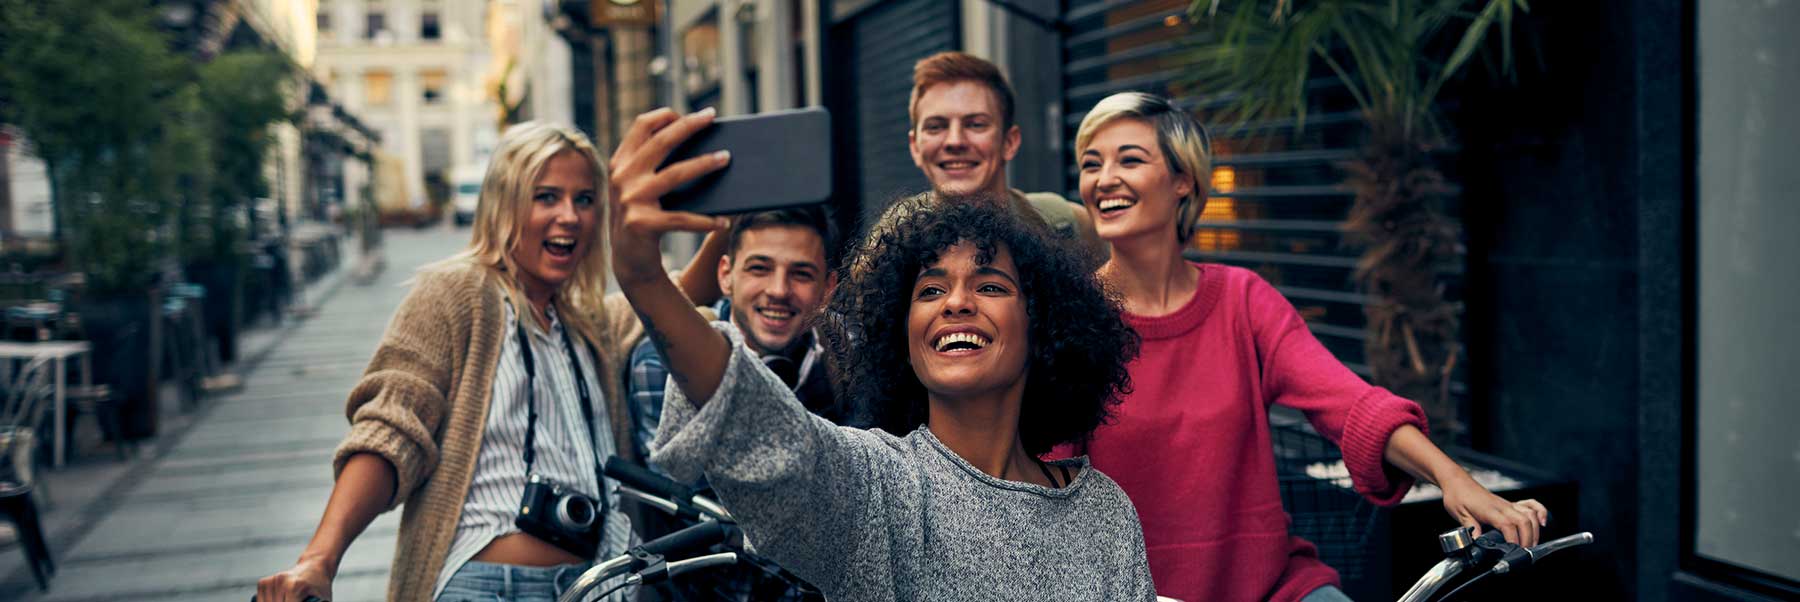 Image d'un groupe d'amis à bicyclette sur le trottoir prenant un égoportrait